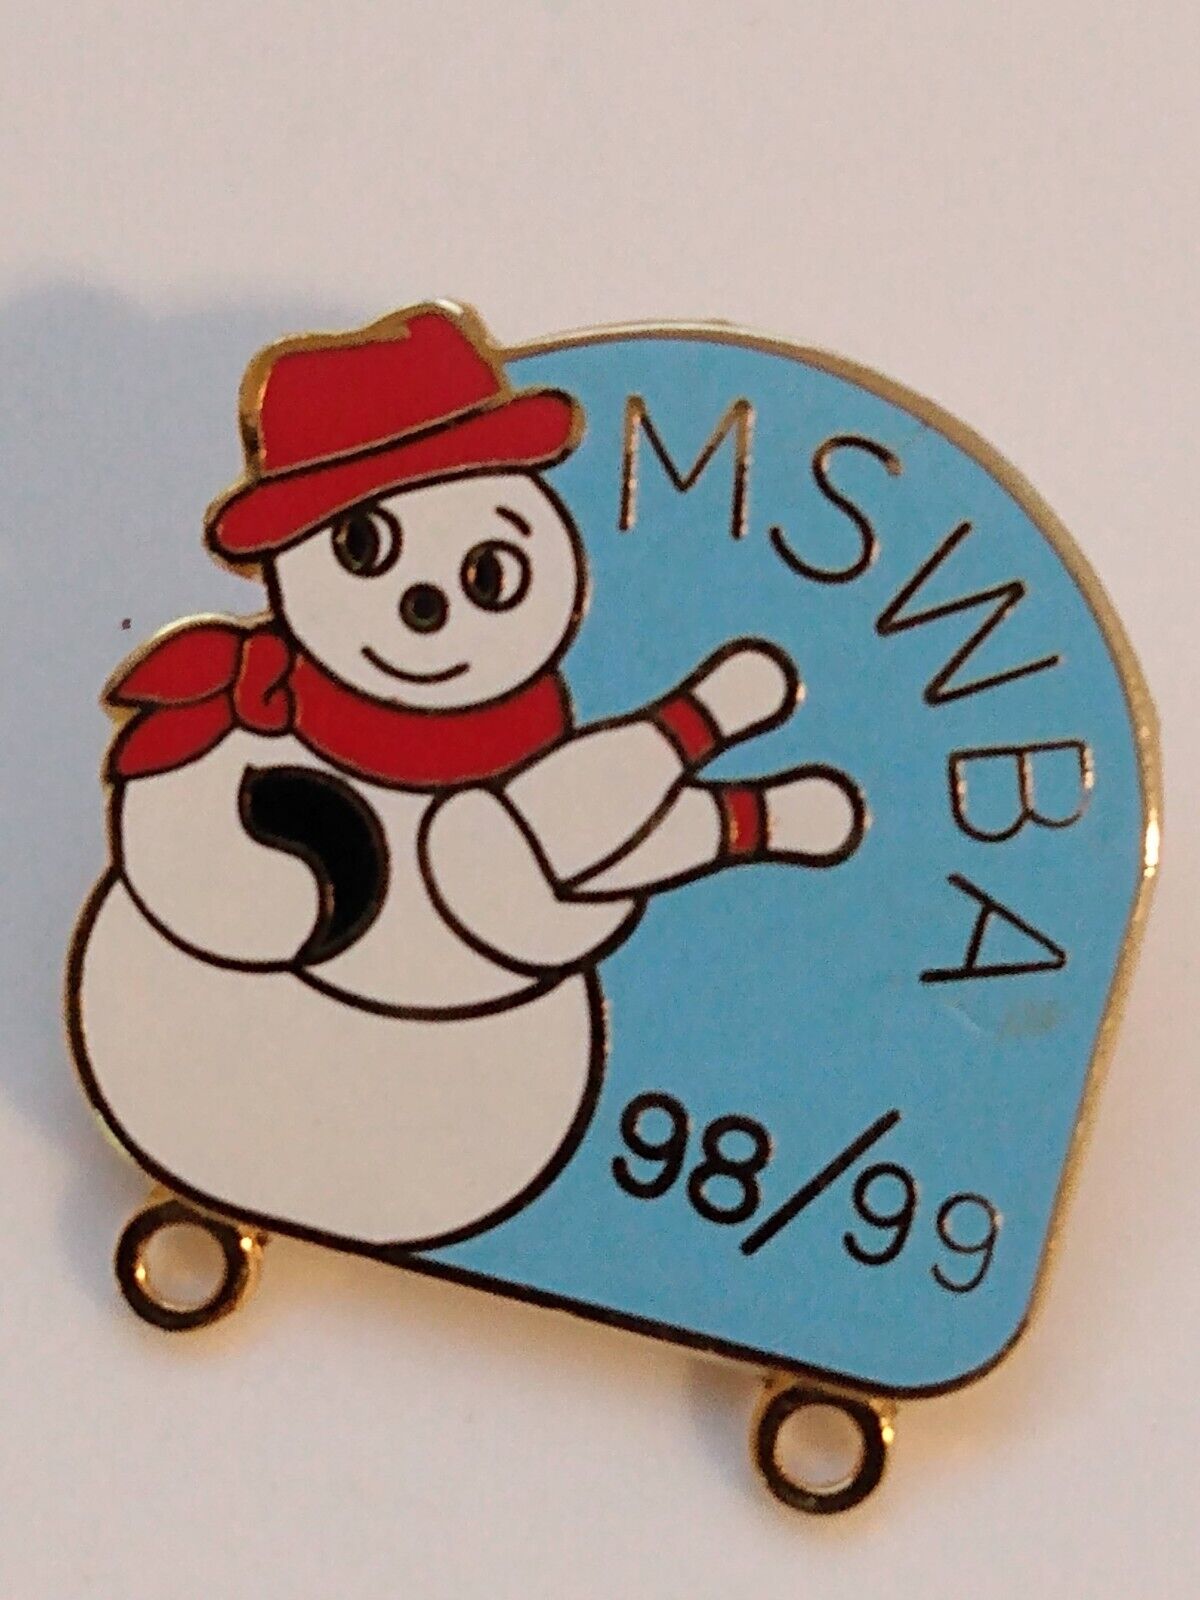 1998-99 MSWBA Snowman Lapel Pin